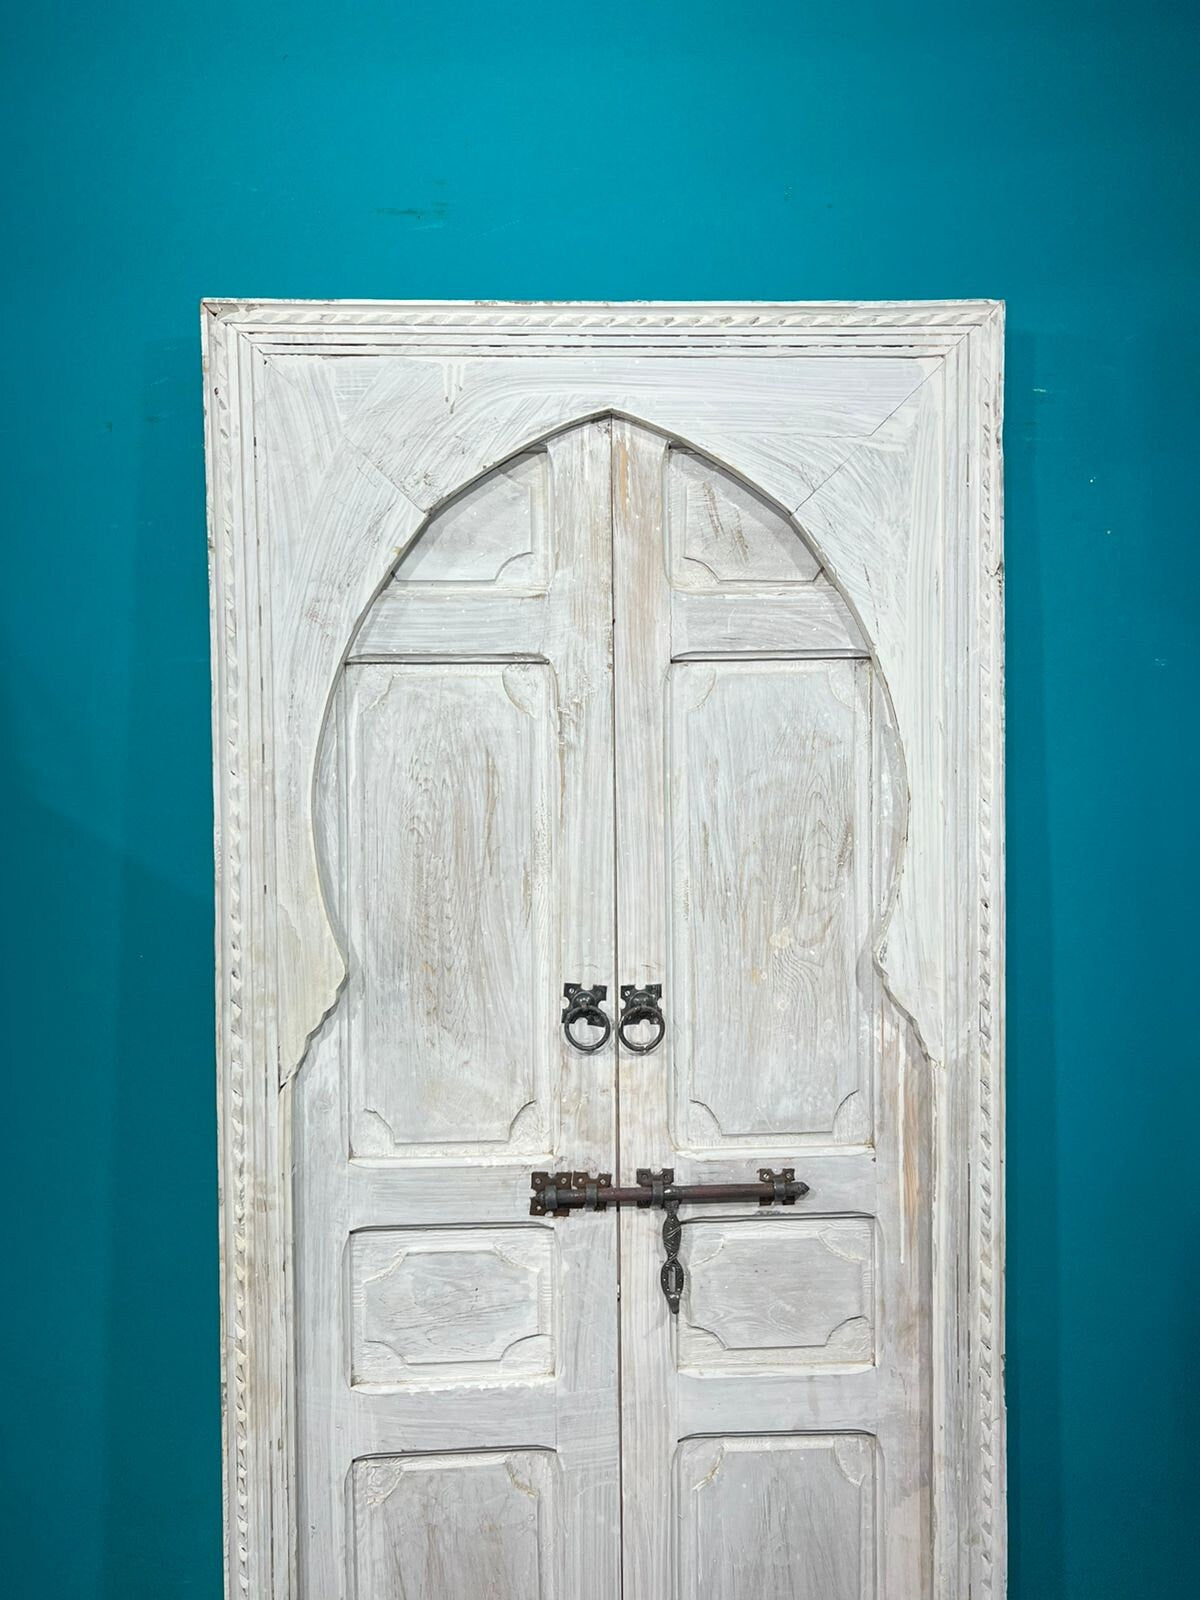 Moroccan door, wooden door, hand carved door, Mediterranean design, vintage rustic, Moroccan artwork and Arabic culture